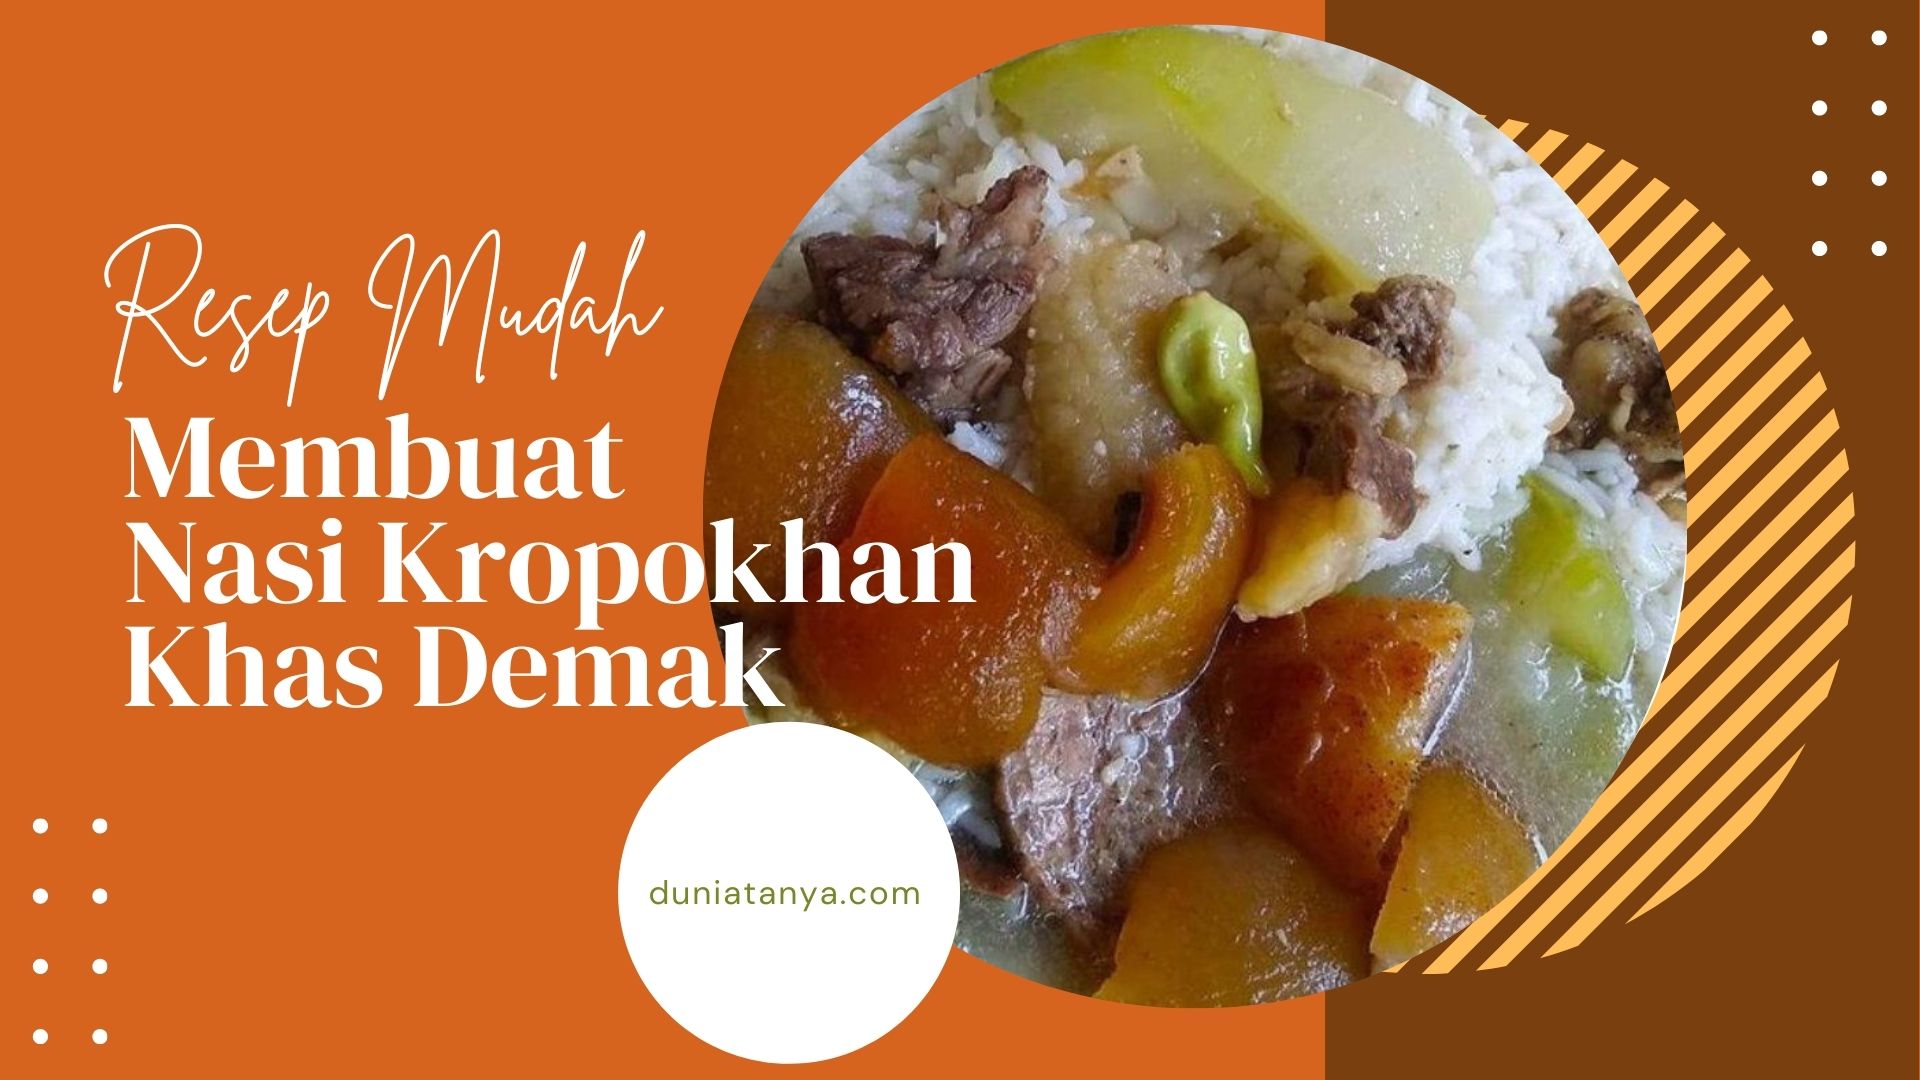 You are currently viewing Resep Mudah Membuat Nasi Kropokhan Khas Demak